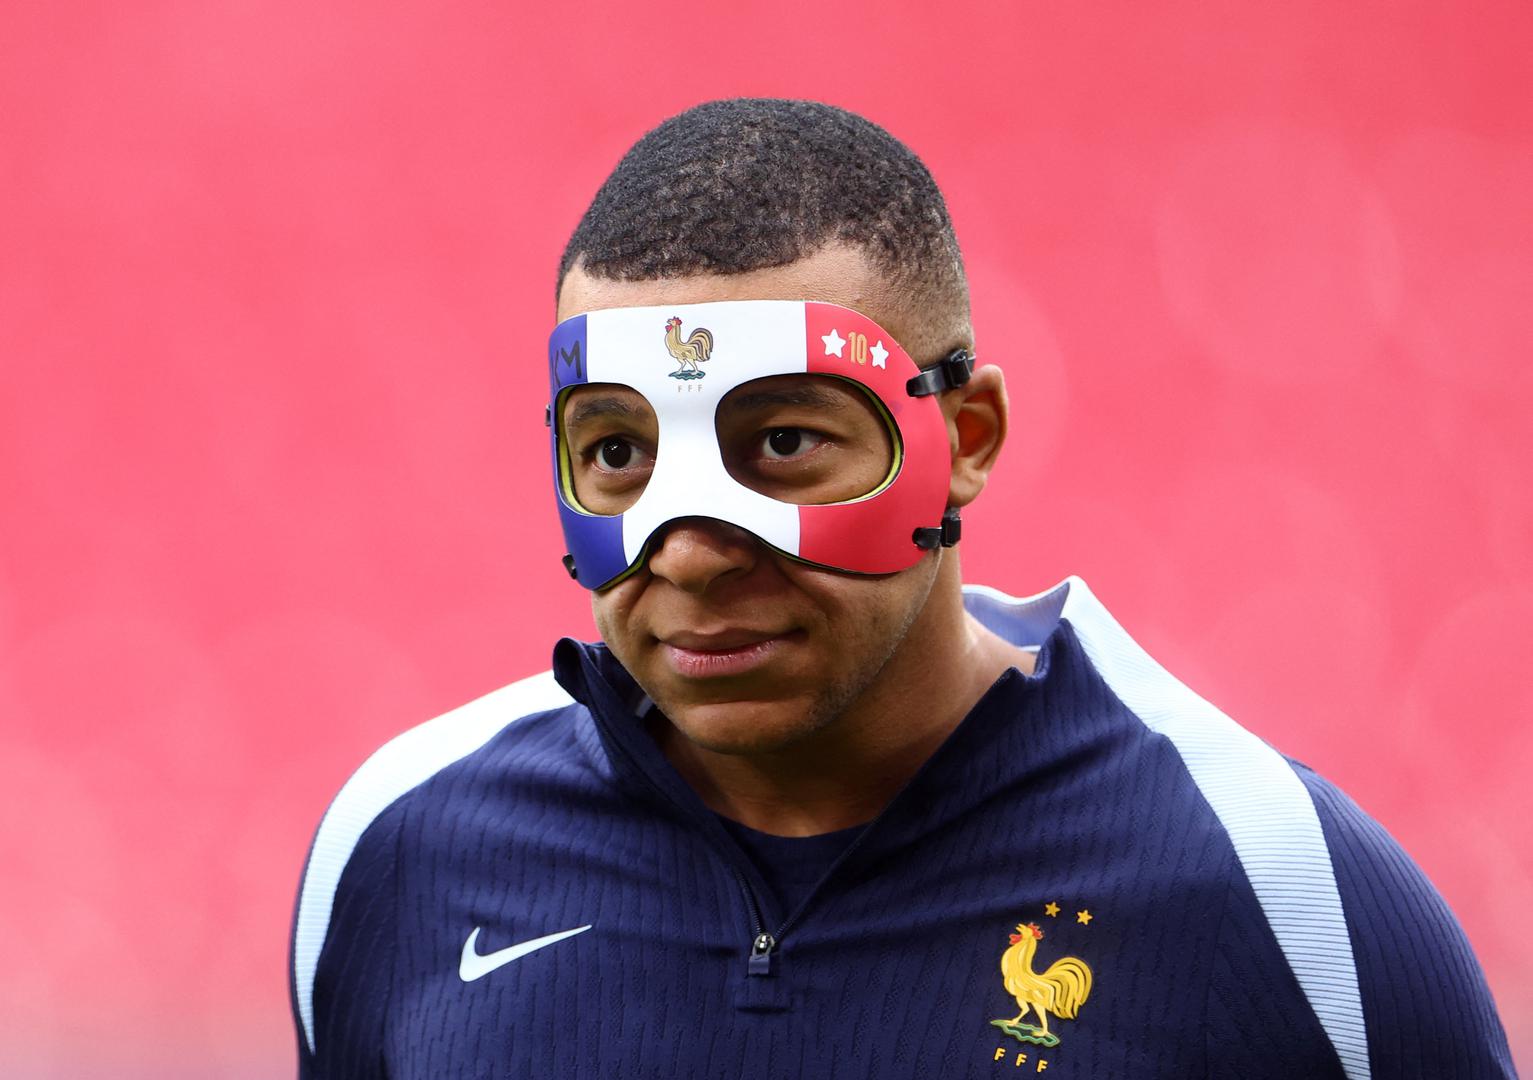 Tim mu je pripremio potpuno crnu masku za lice, a s jedne strane je sitnim fontom ispisano ime Mbappe, dok se s druge strane može vidjeti francuska zastava.